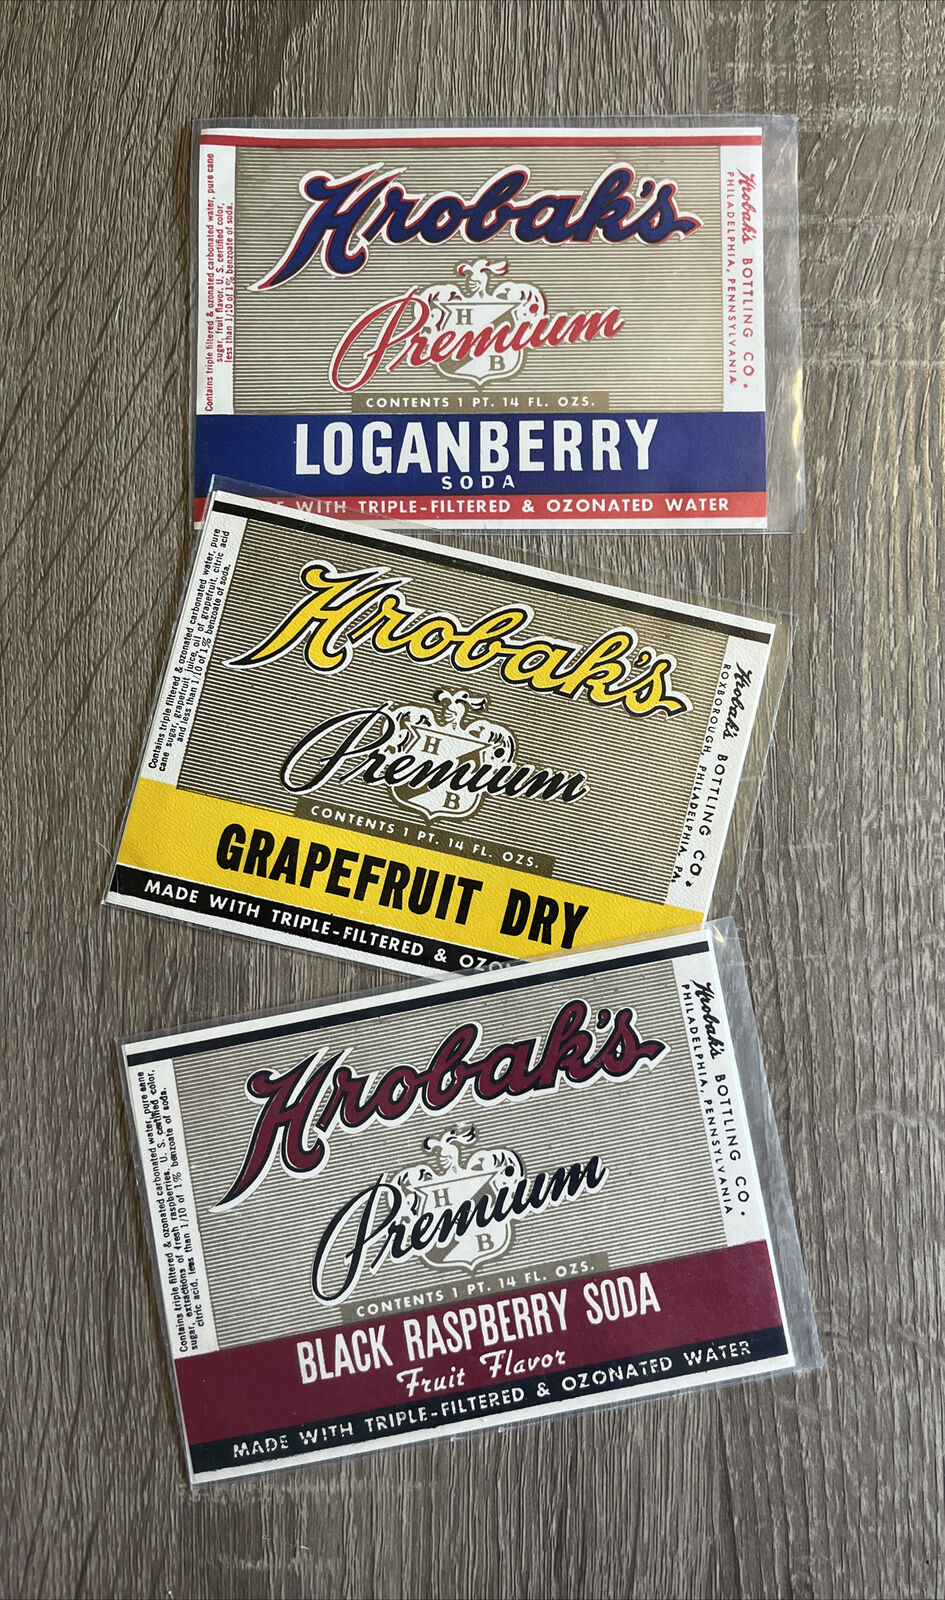 Vtg Hrobak\'s Soda Bottle Labels (3) Loganberry Grapefruit Dry Black Raspberry